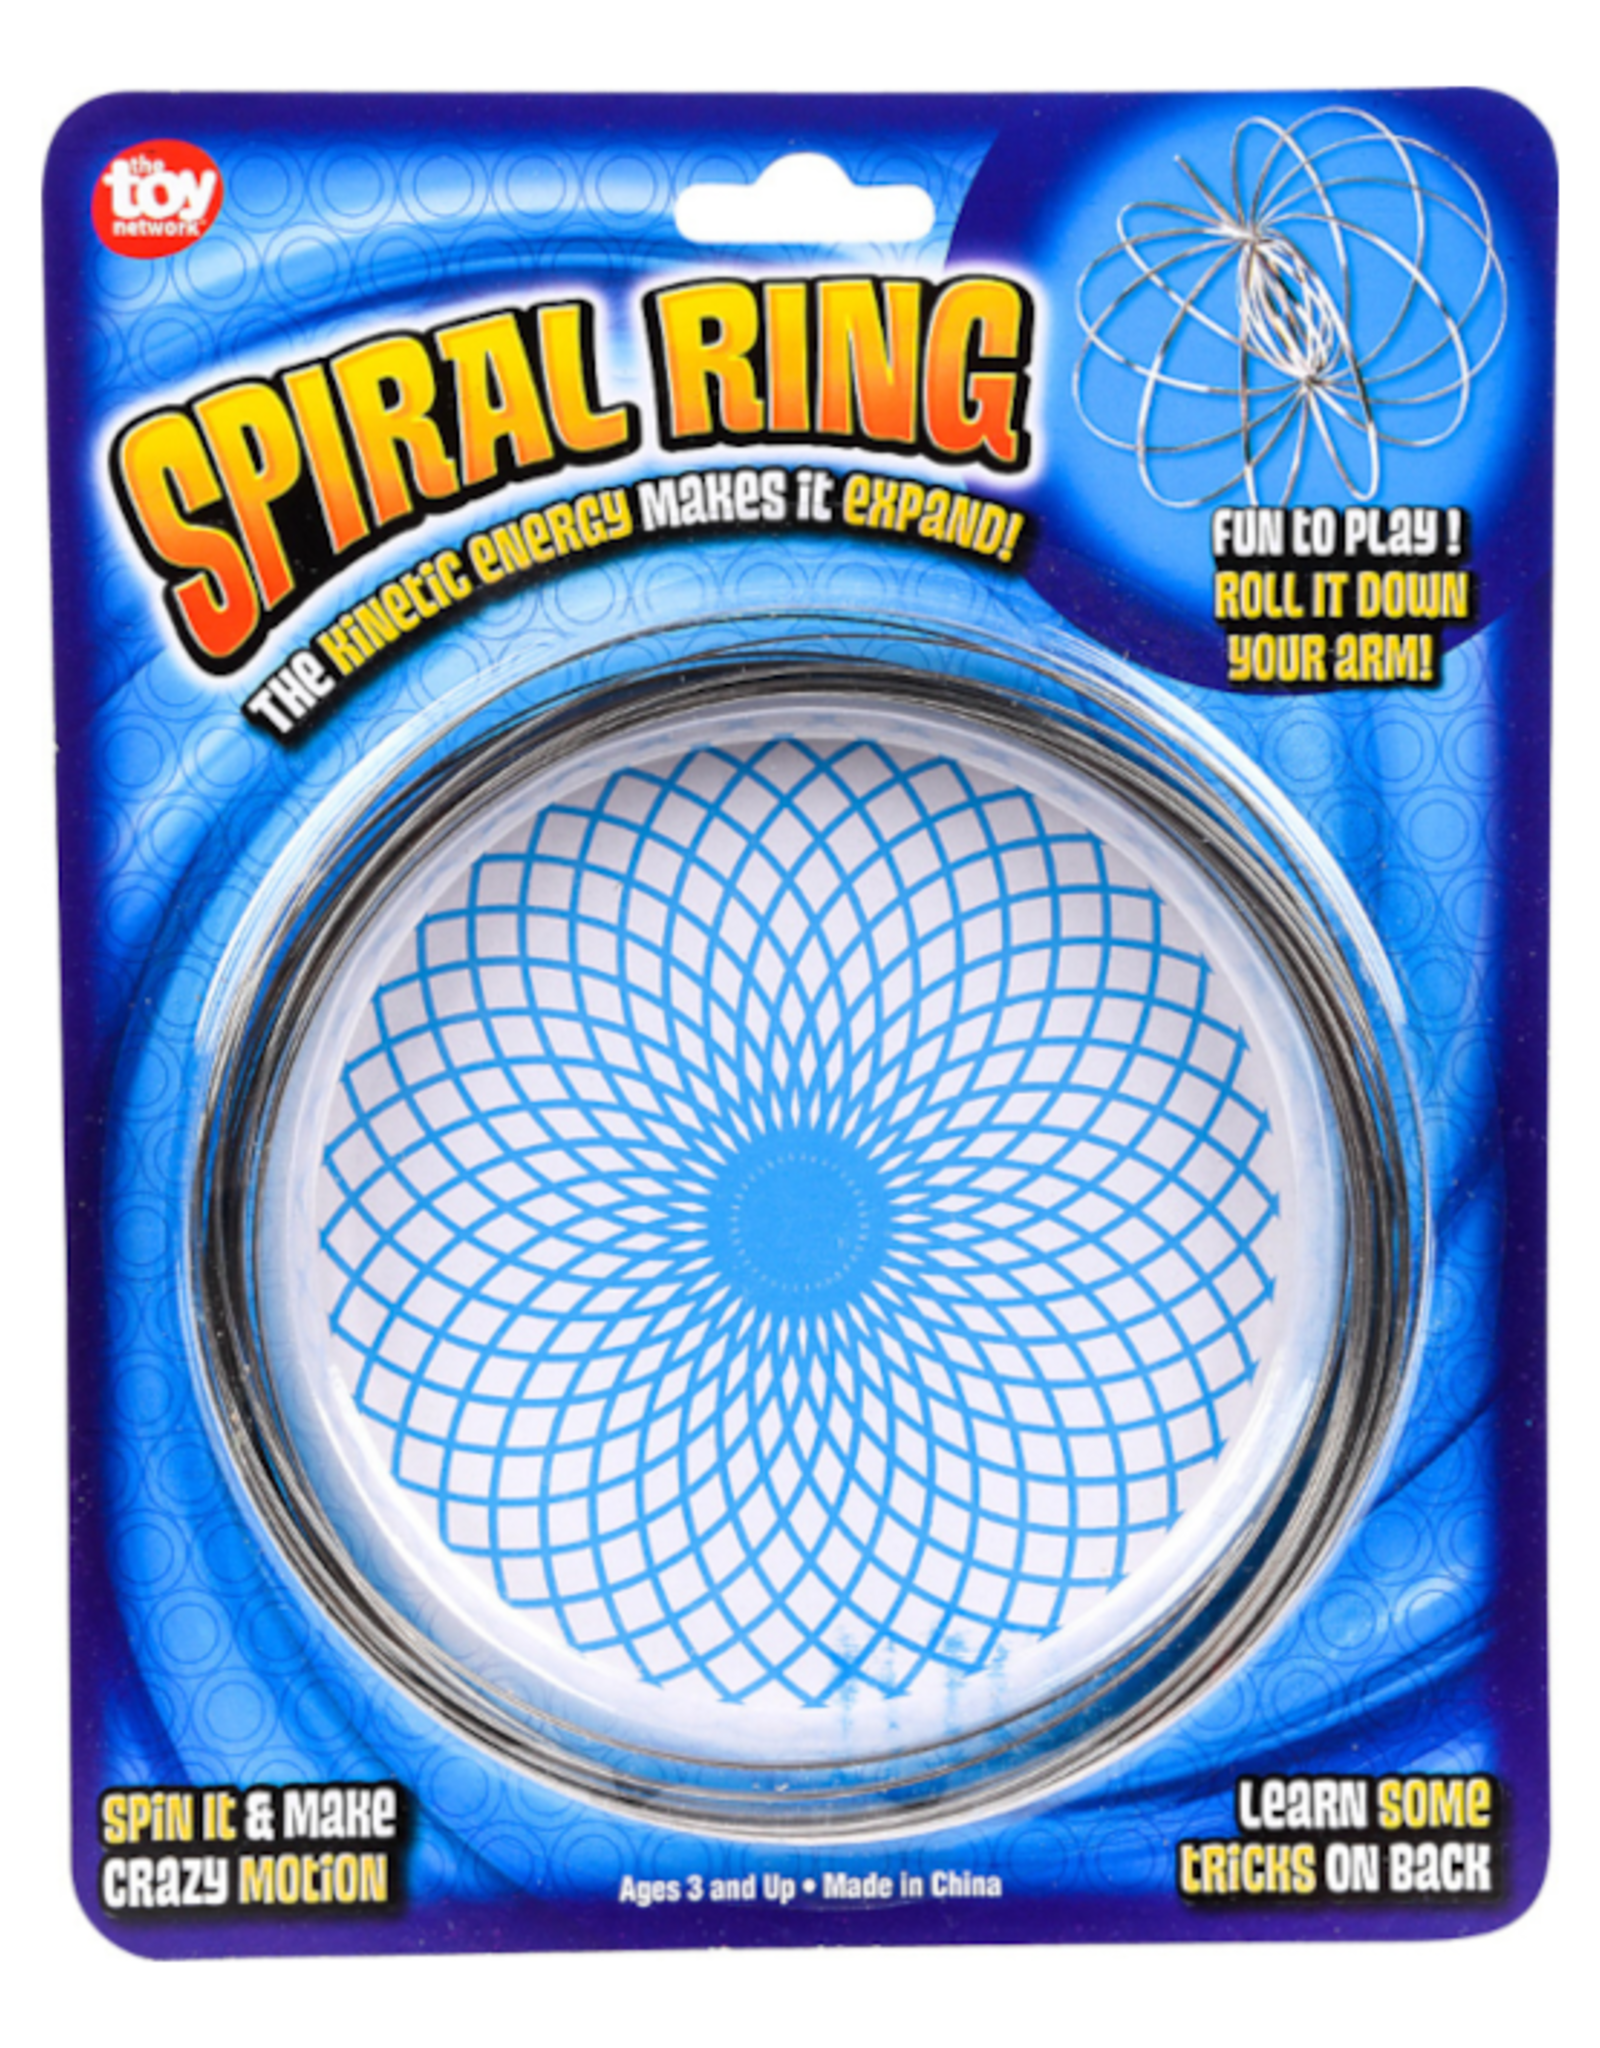 Metallic Spiral Ring 4.75"